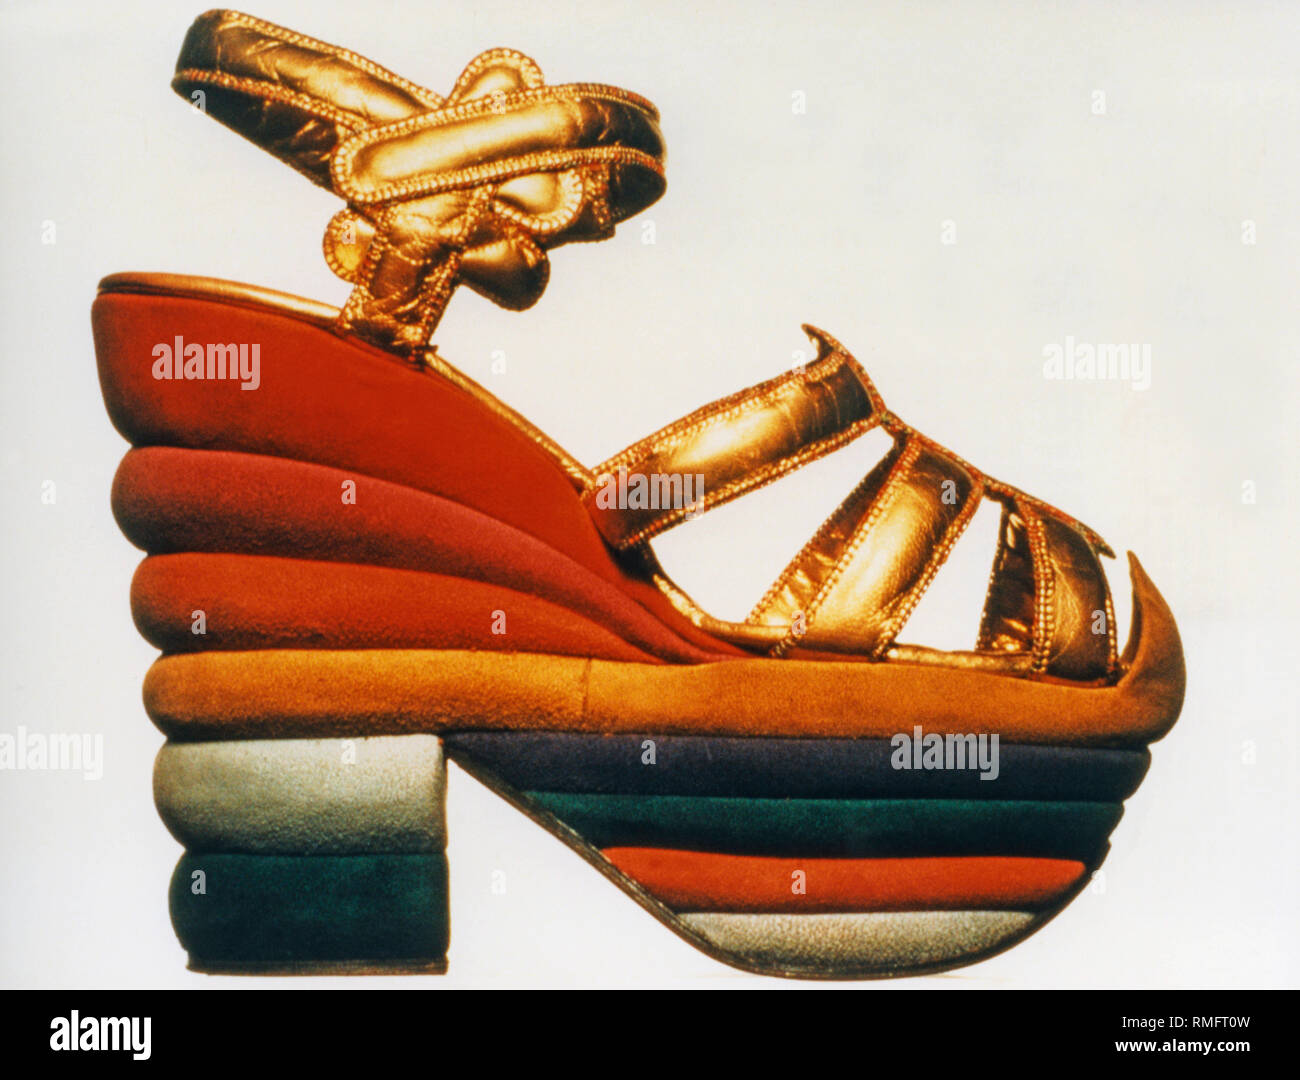 Créateur de chaussures italiennes de Salvatore Ferragamo a conçu le  'Rainbow' sandales pour l'actrice Judy Garland. La sandale plate-forme est  fait de cuir de chèvre avec une seule couche de liège et